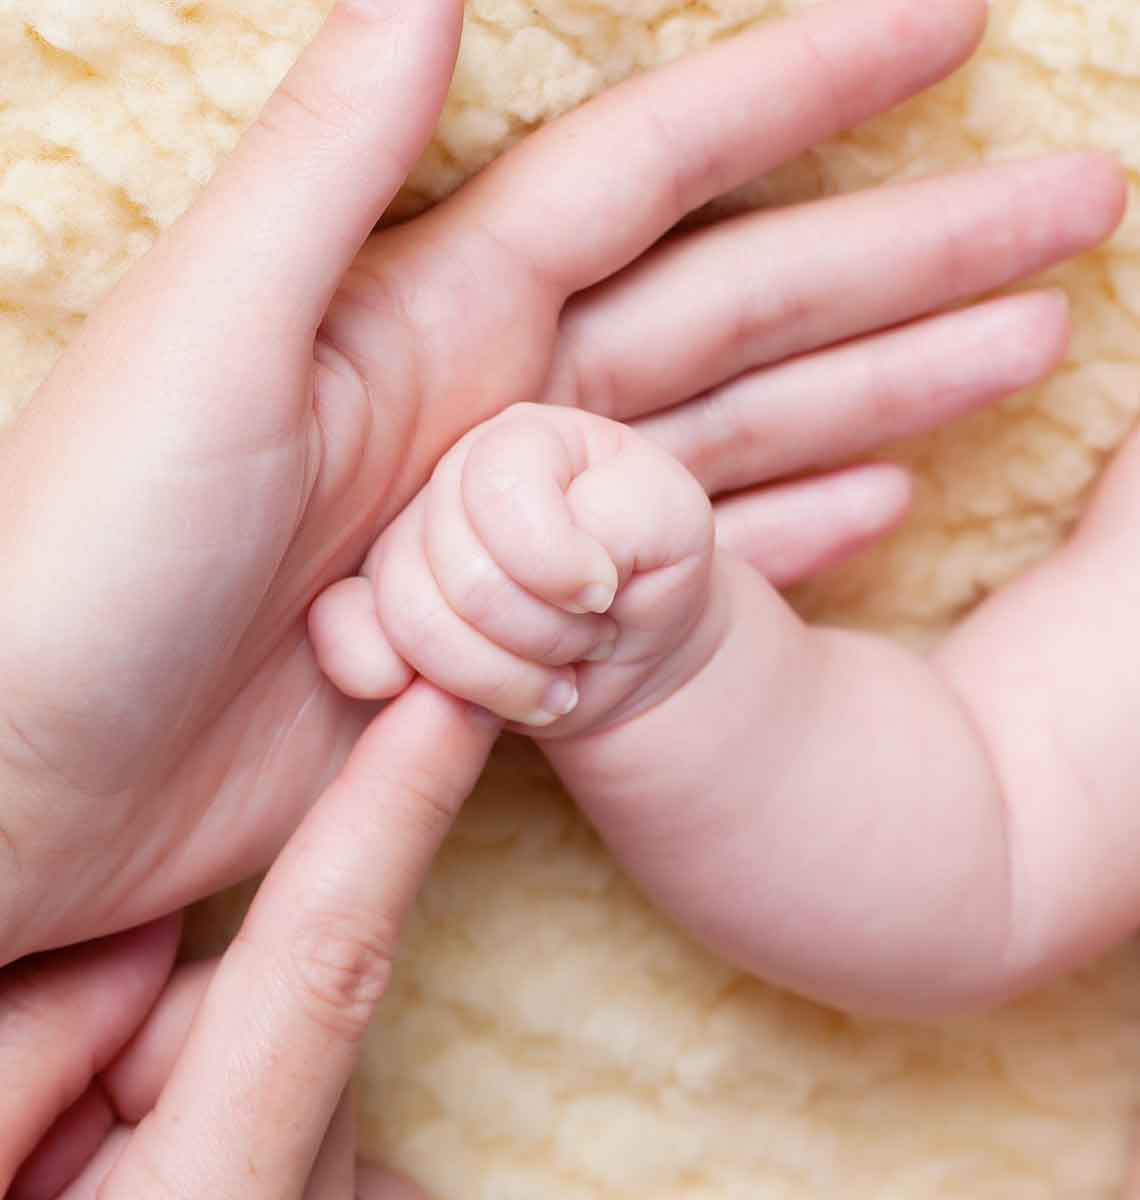 forord Association Legende Hvordan klipper du negle på baby? | Apotekets